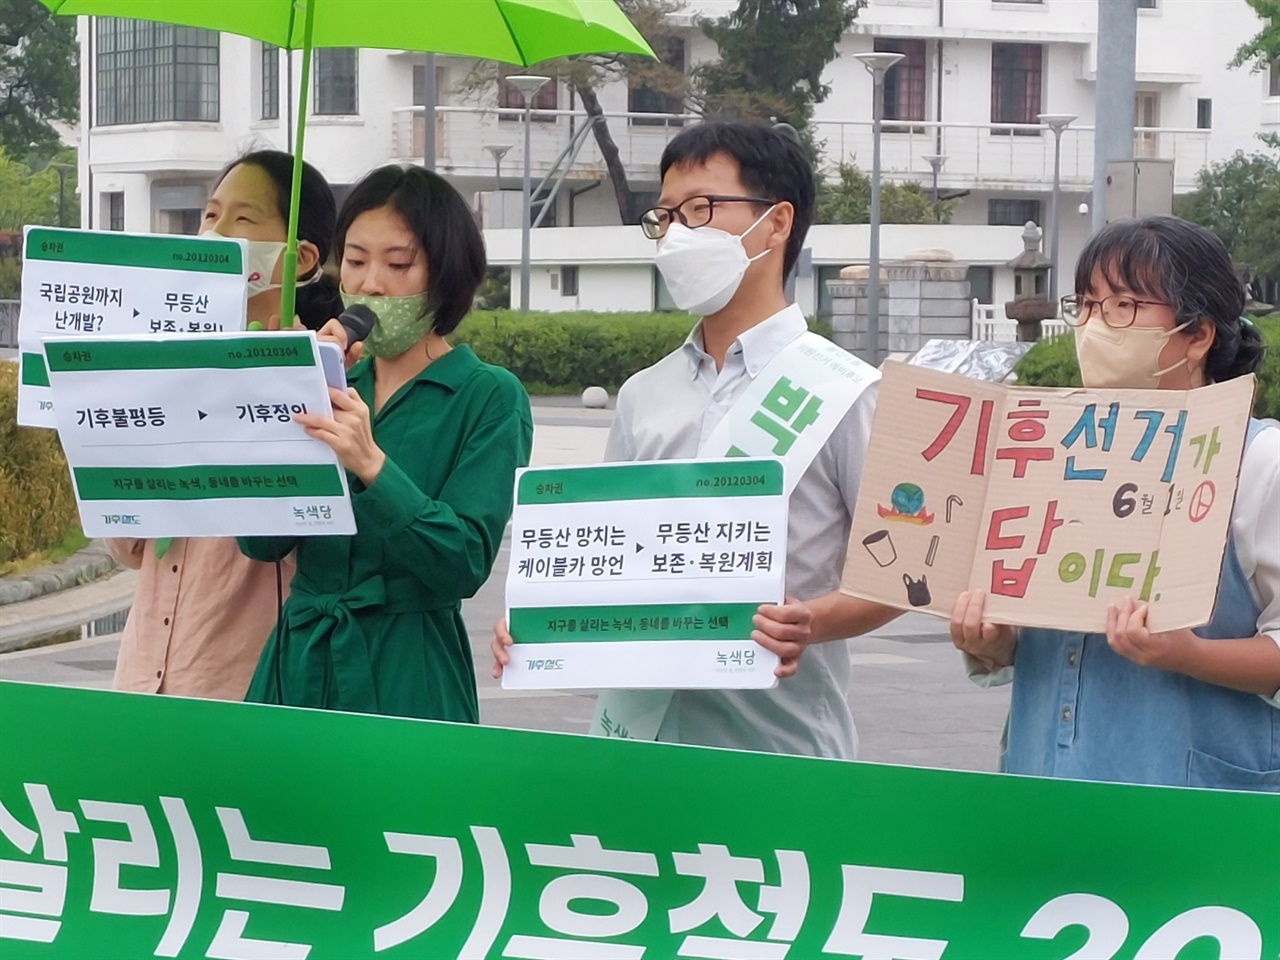 26일 기자회견에서 김예원 녹색당 공동대표가 발언하고 있다.